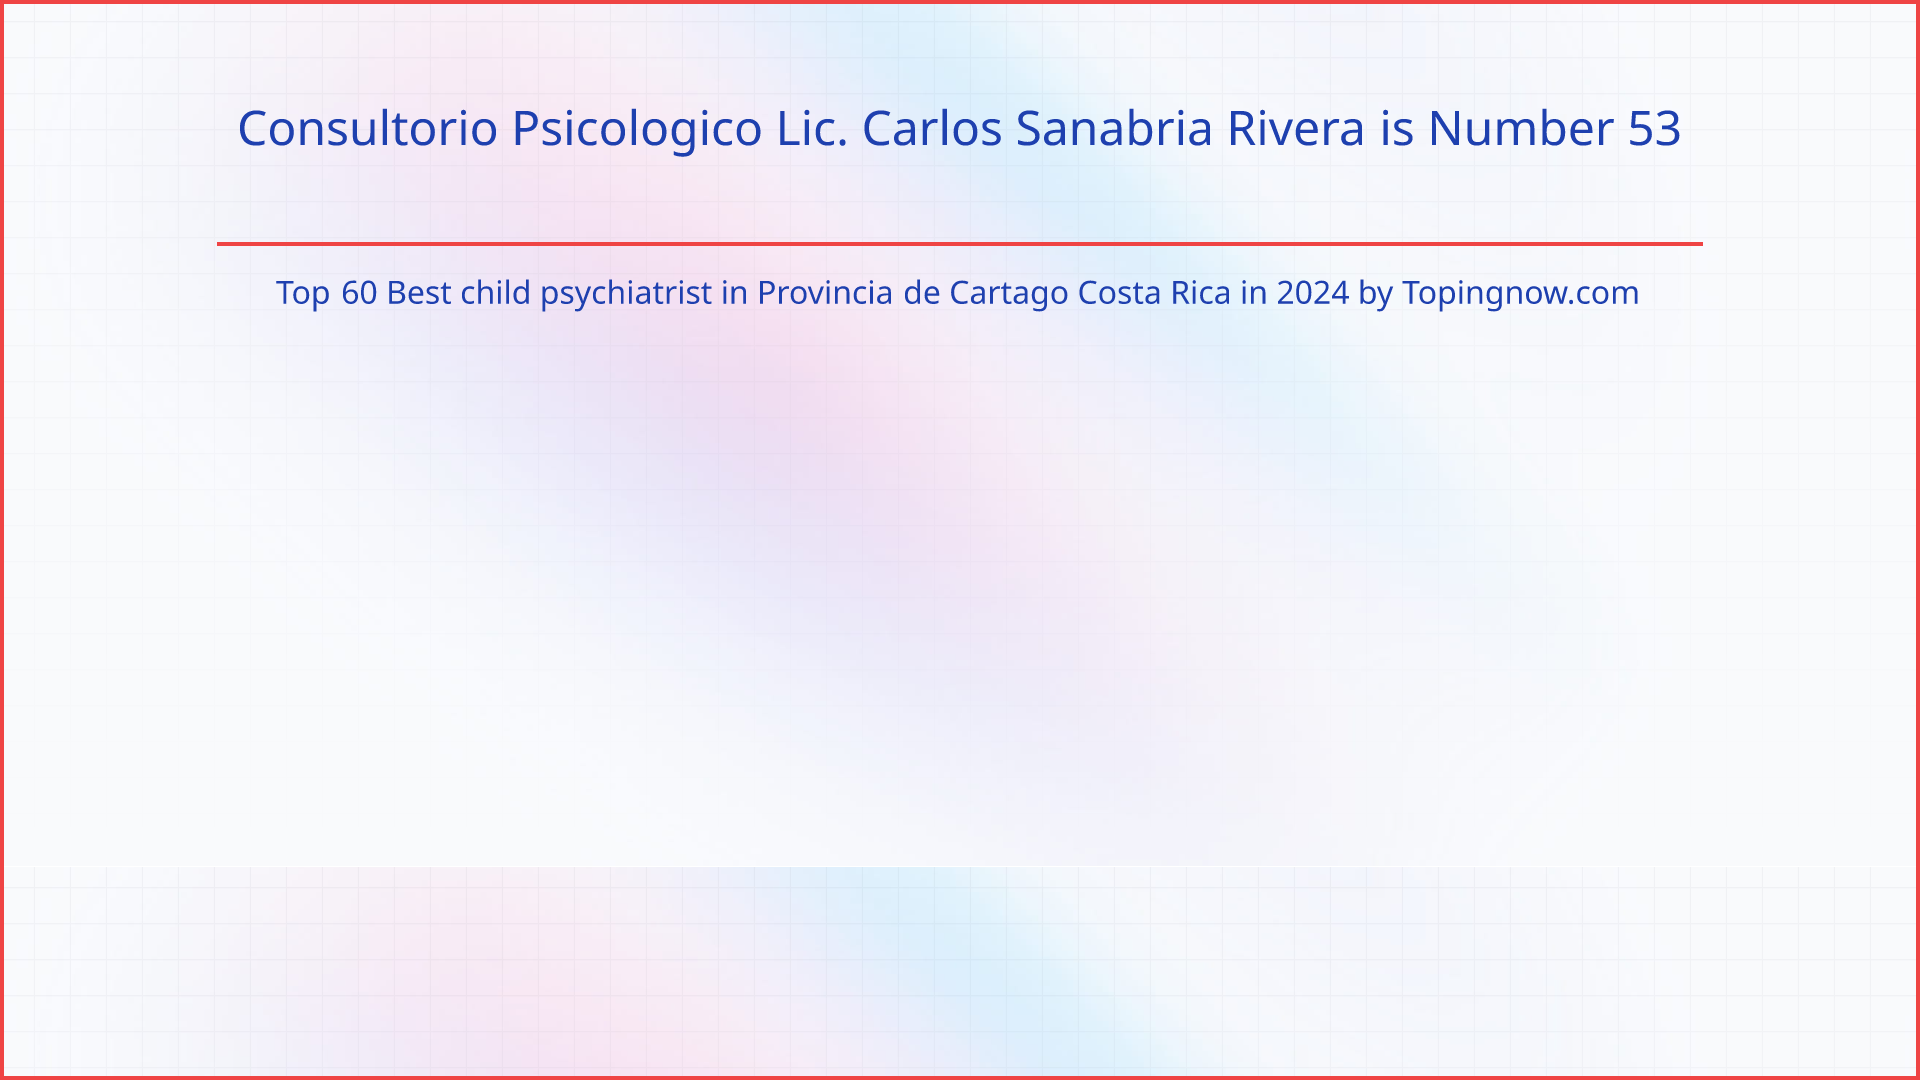 Consultorio Psicologico Lic. Carlos Sanabria Rivera: Top 60 Best child psychiatrist in Provincia de Cartago Costa Rica in 2024